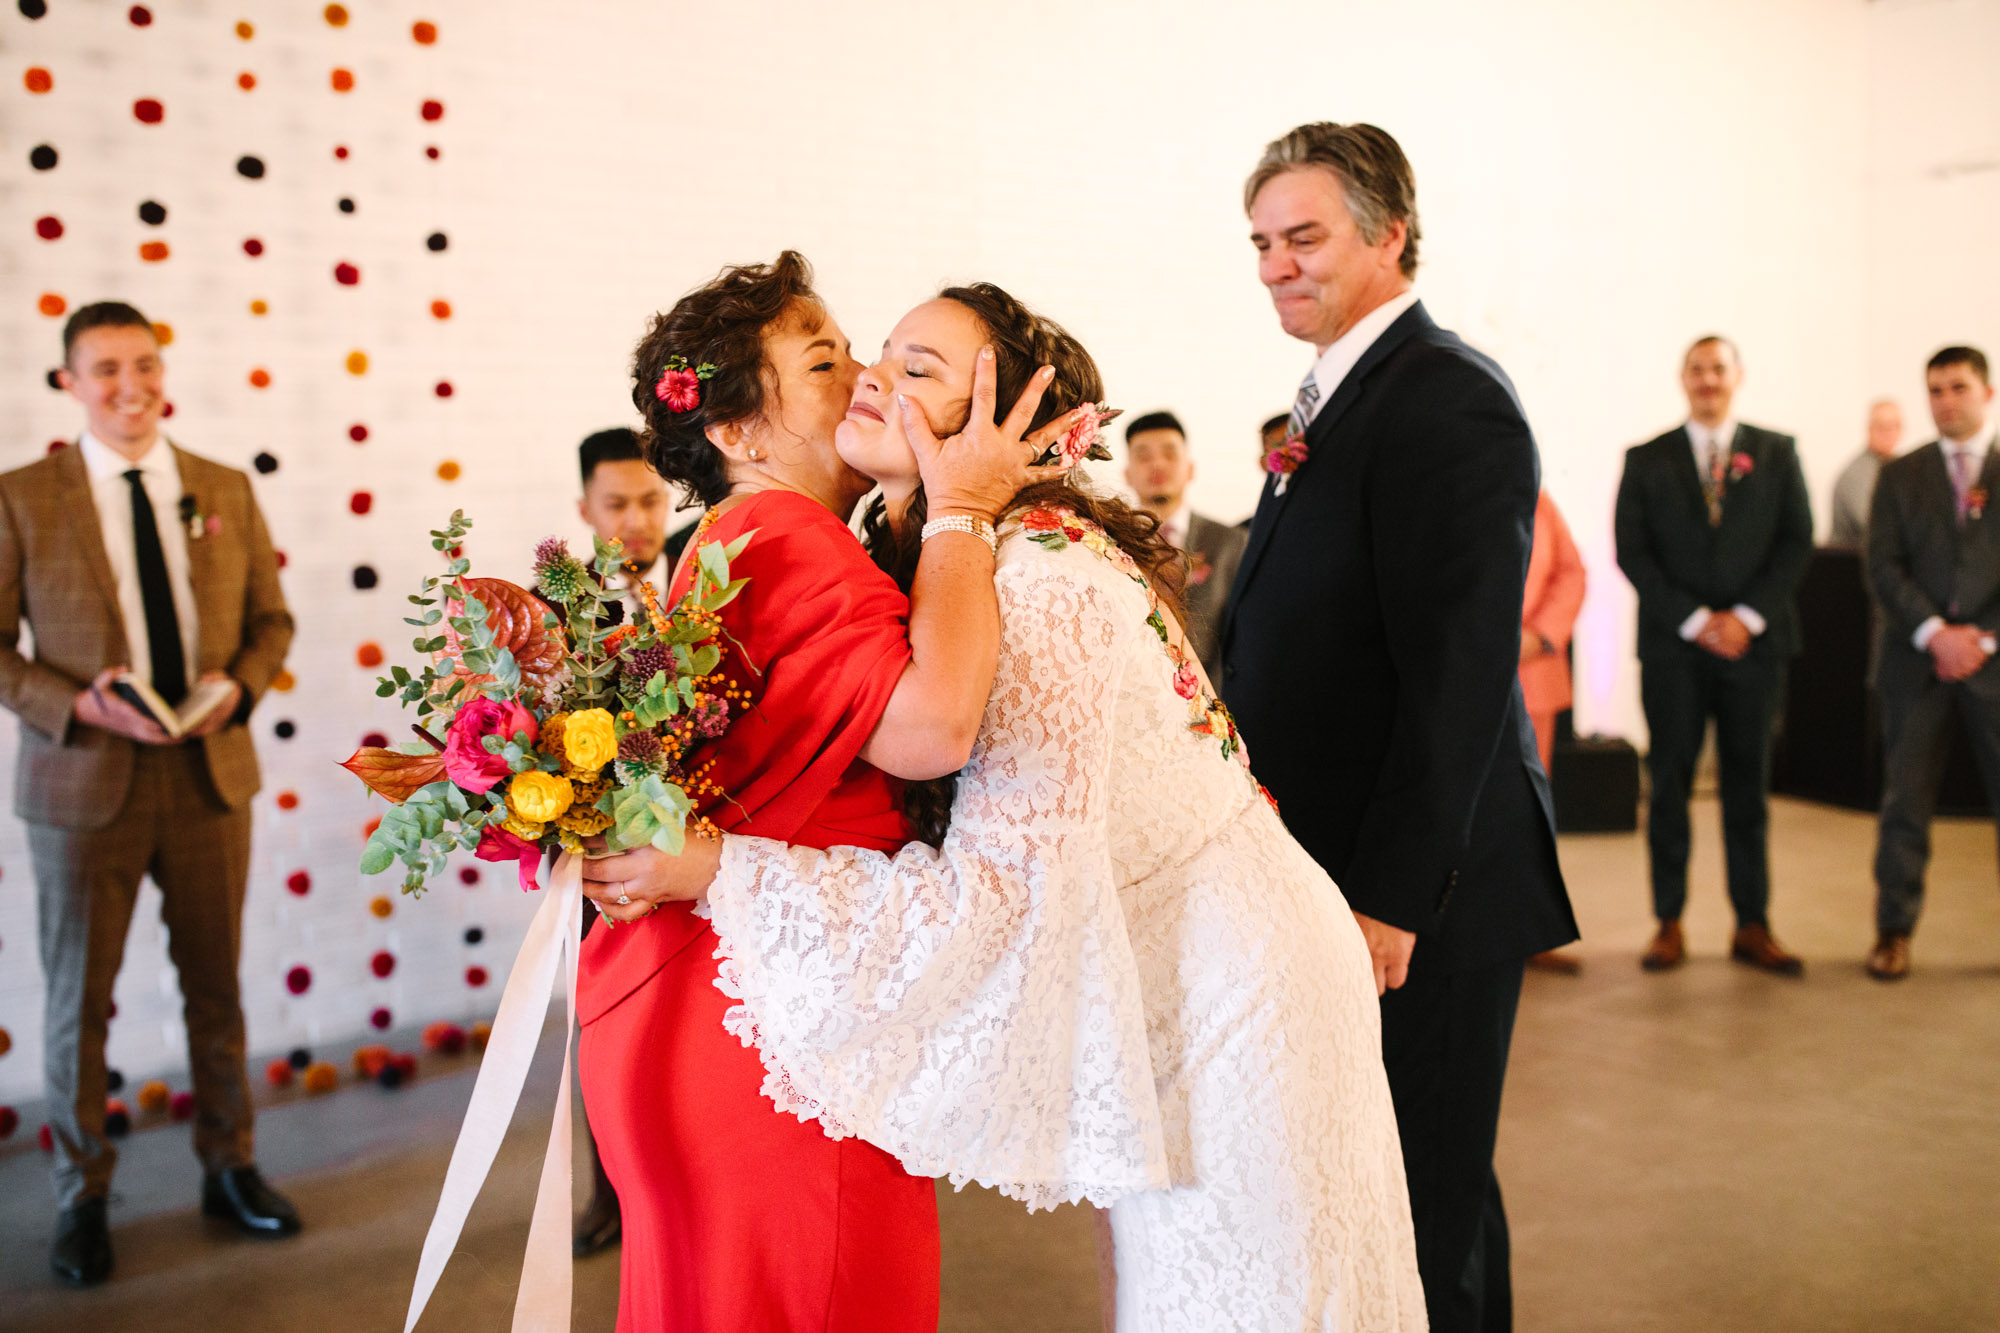 Mom kissing bride at wedding ceremony - www.marycostaweddings.com